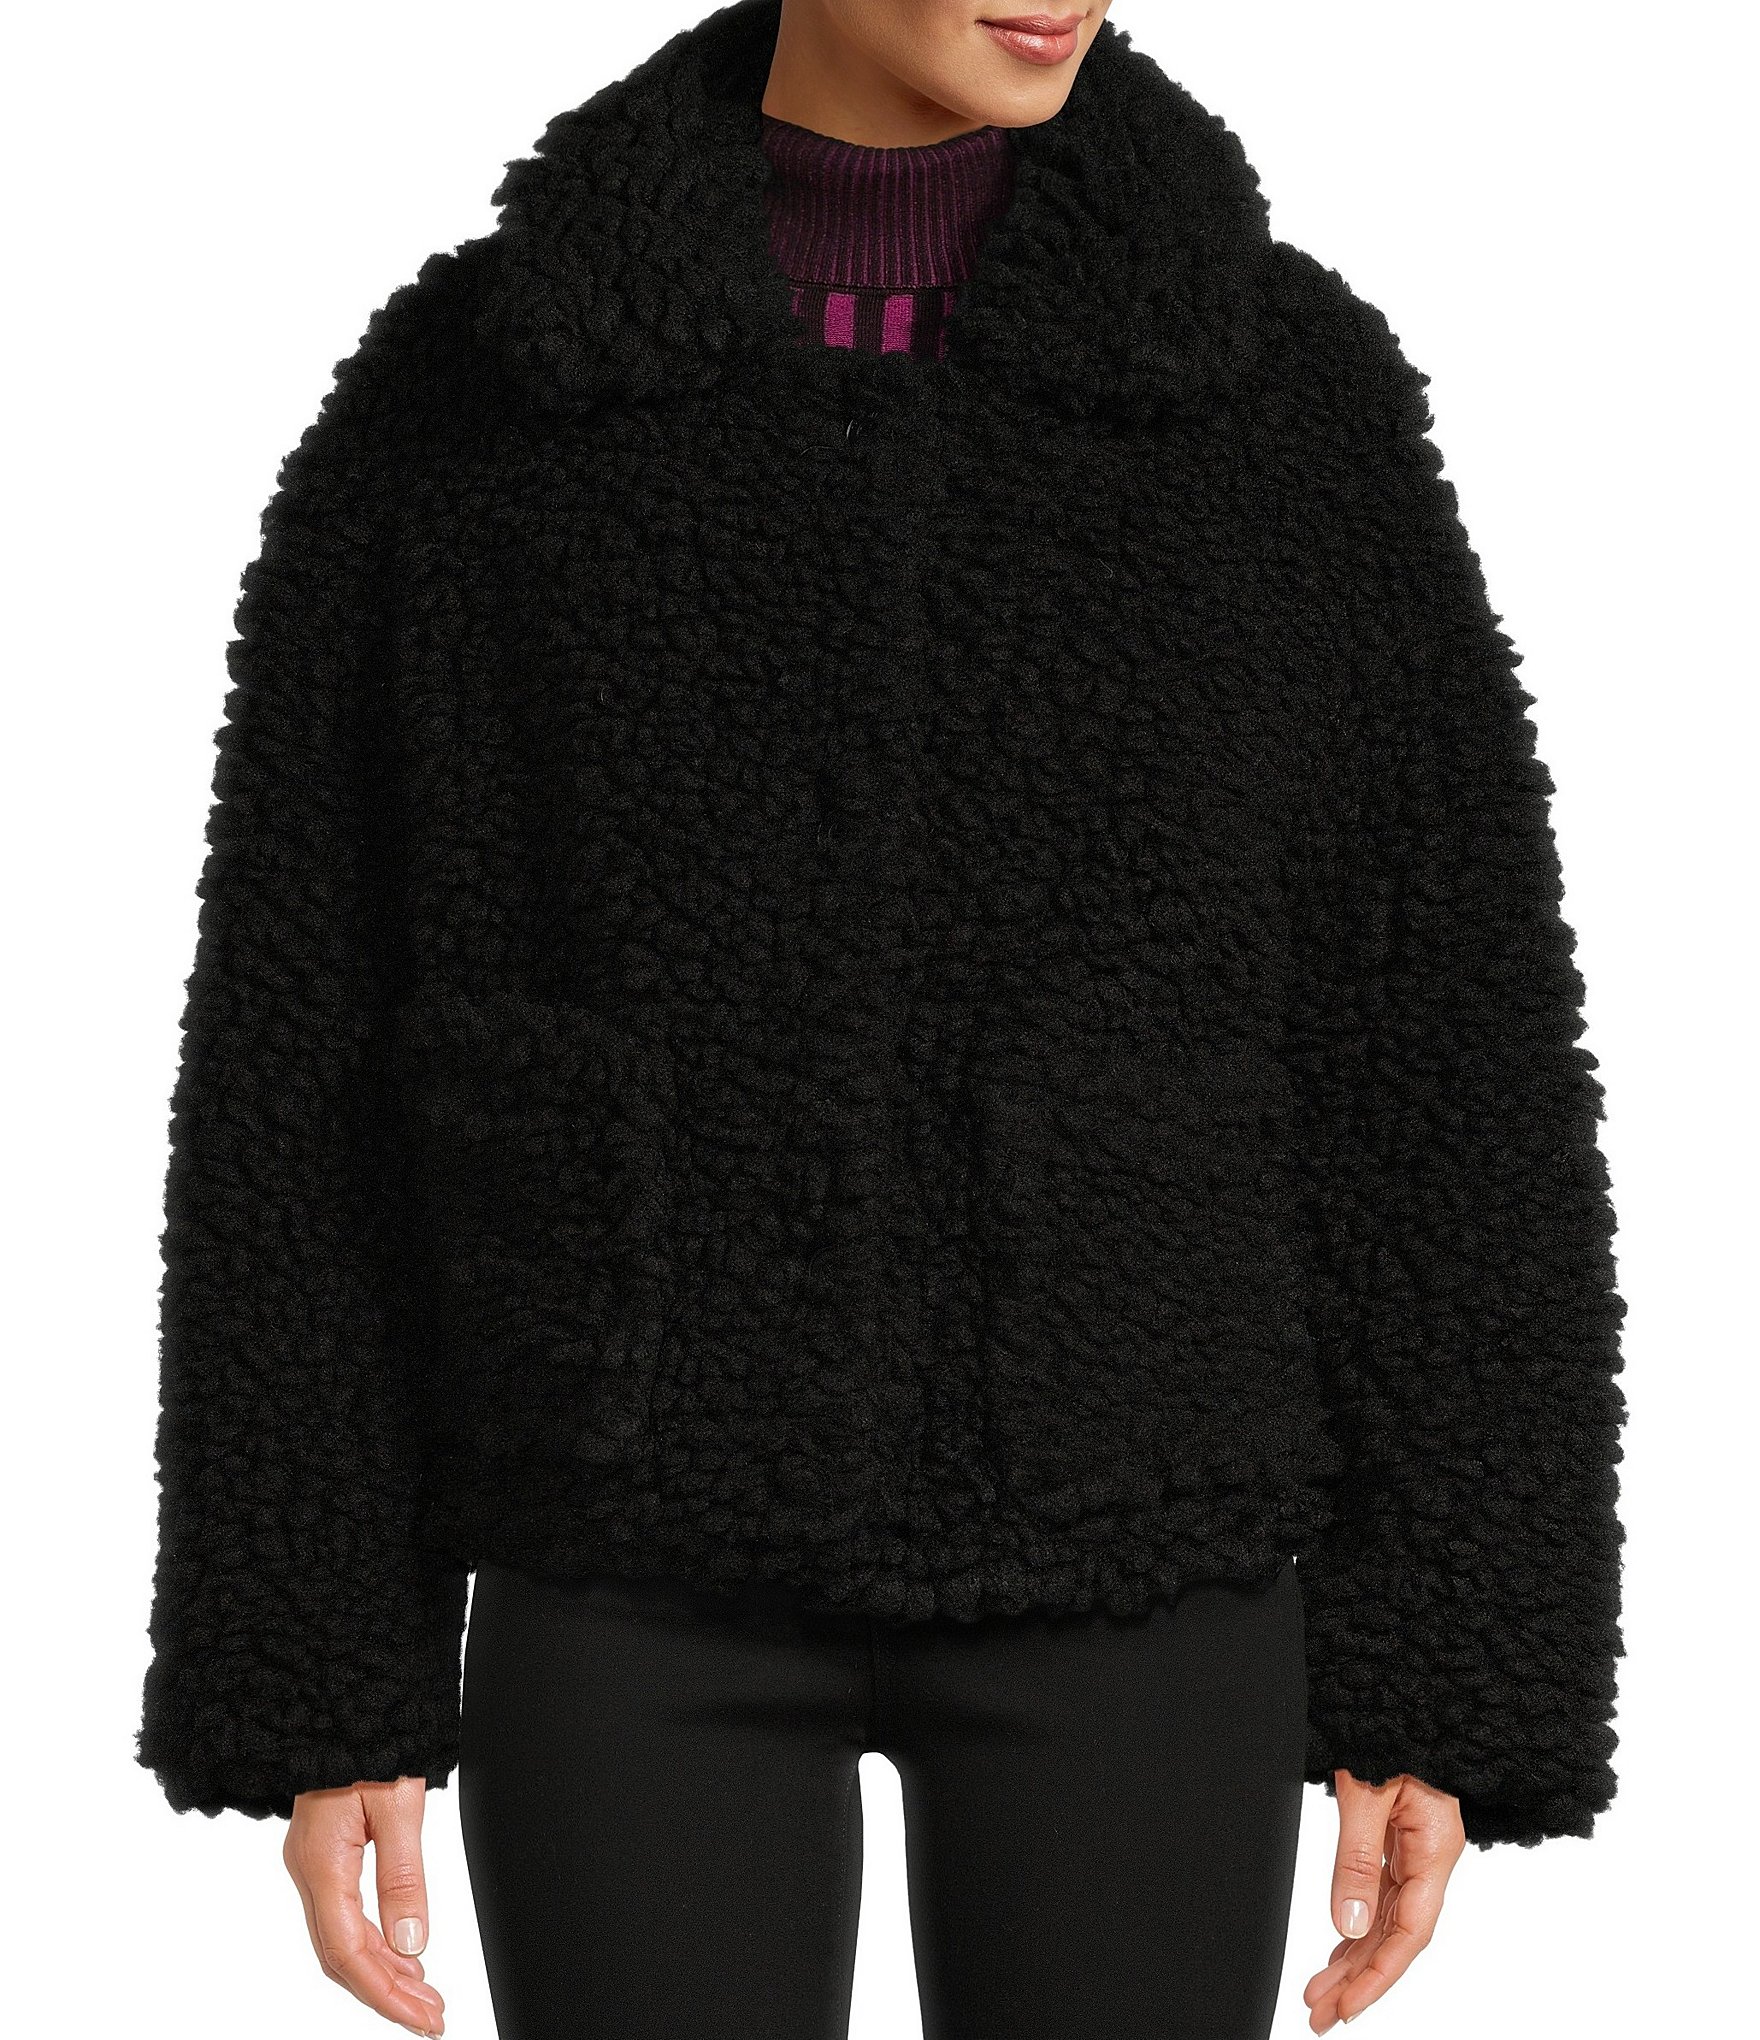 DKNY Sherpa Puffer Coats & Jackets